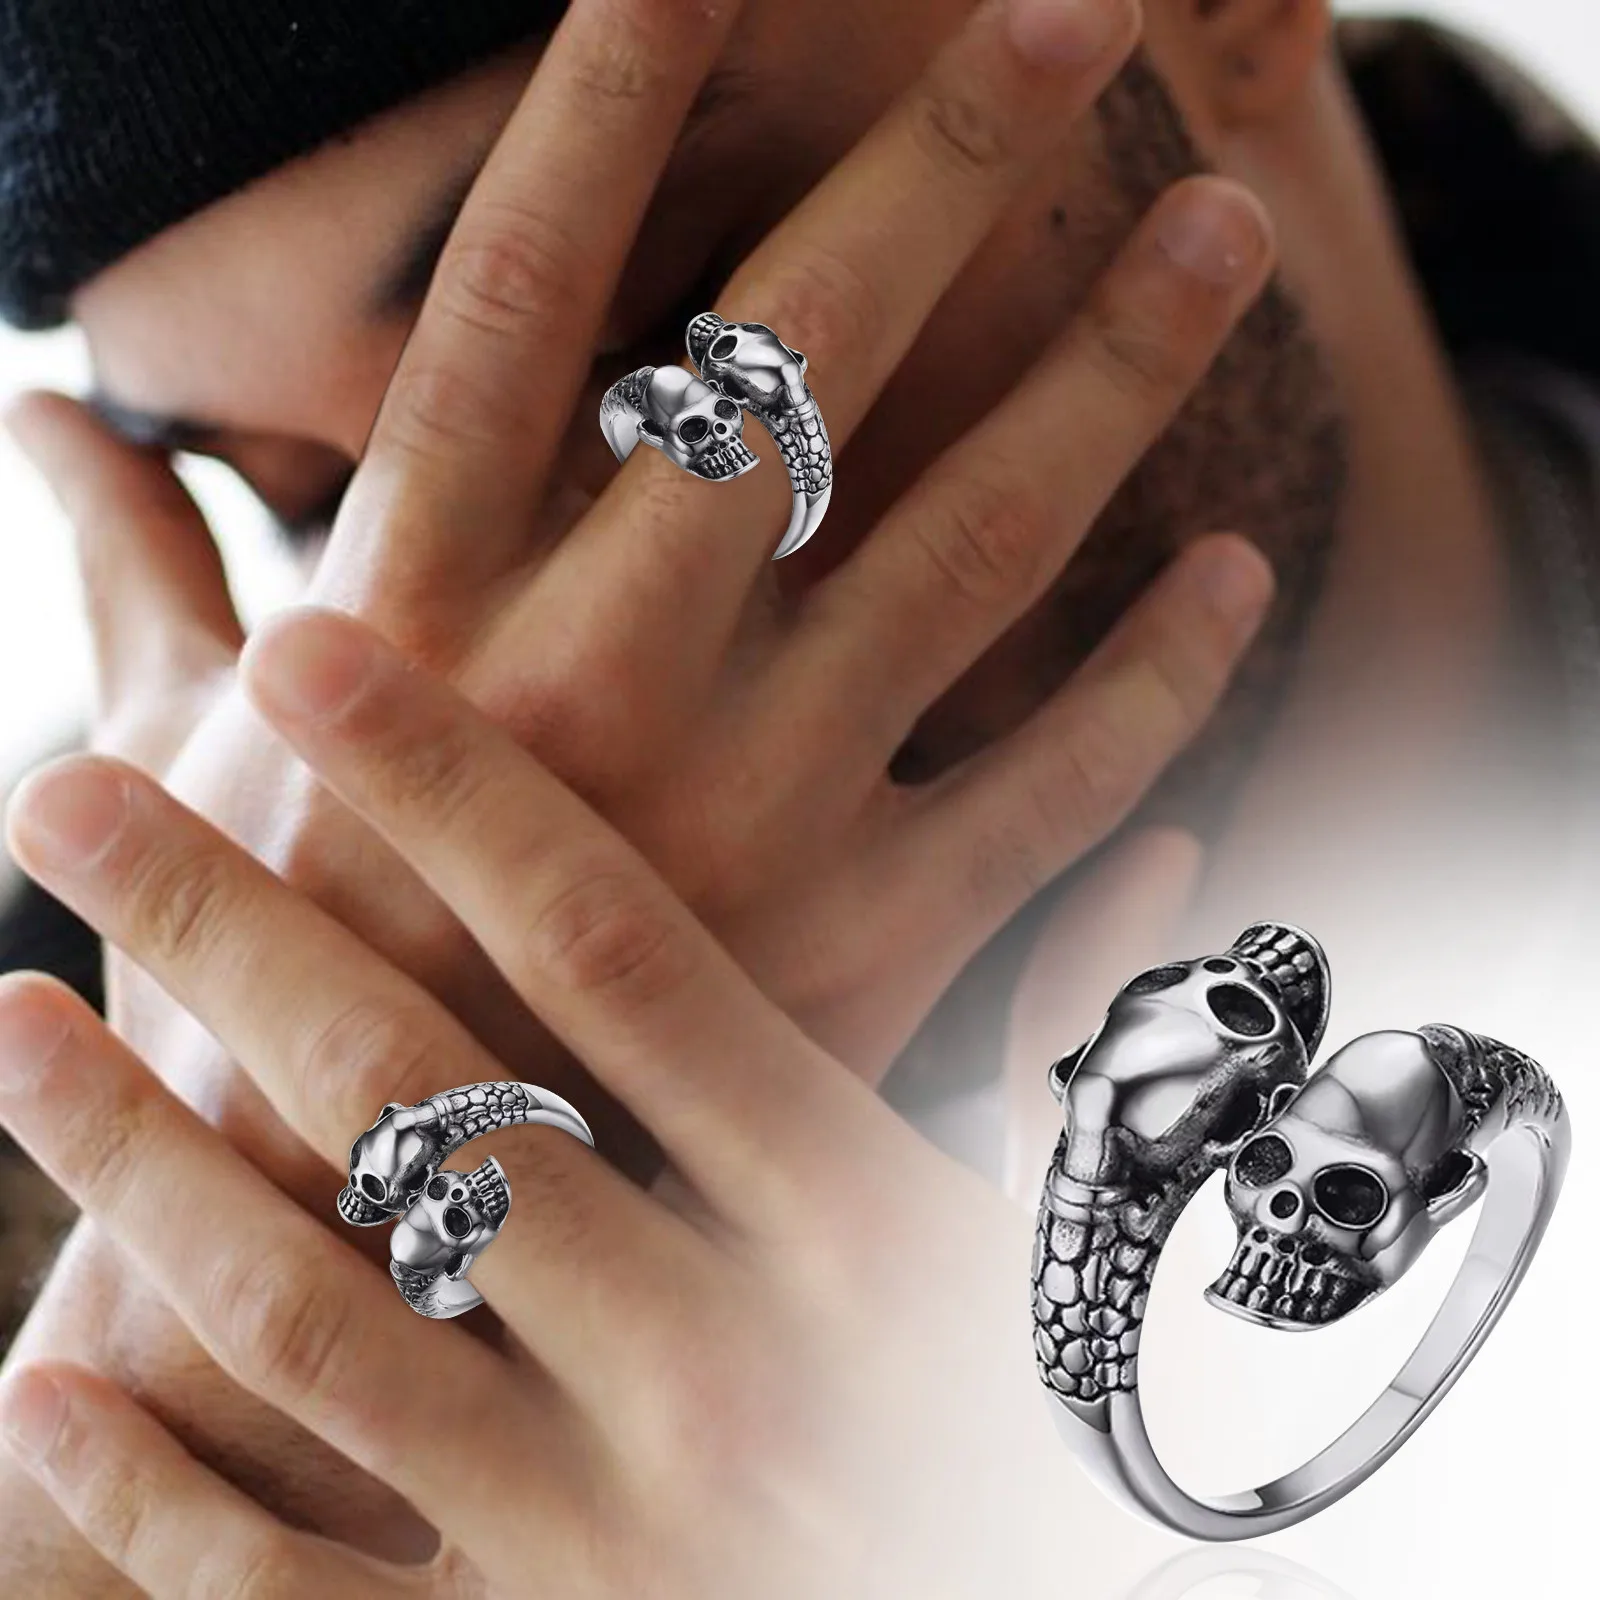 Мужское модное индивидуальное кольцо с головой из сплава, регулируемое кольцо в стиле хип-хоп, универсальное мужское кольцо в упаковке, милые изящные кольца